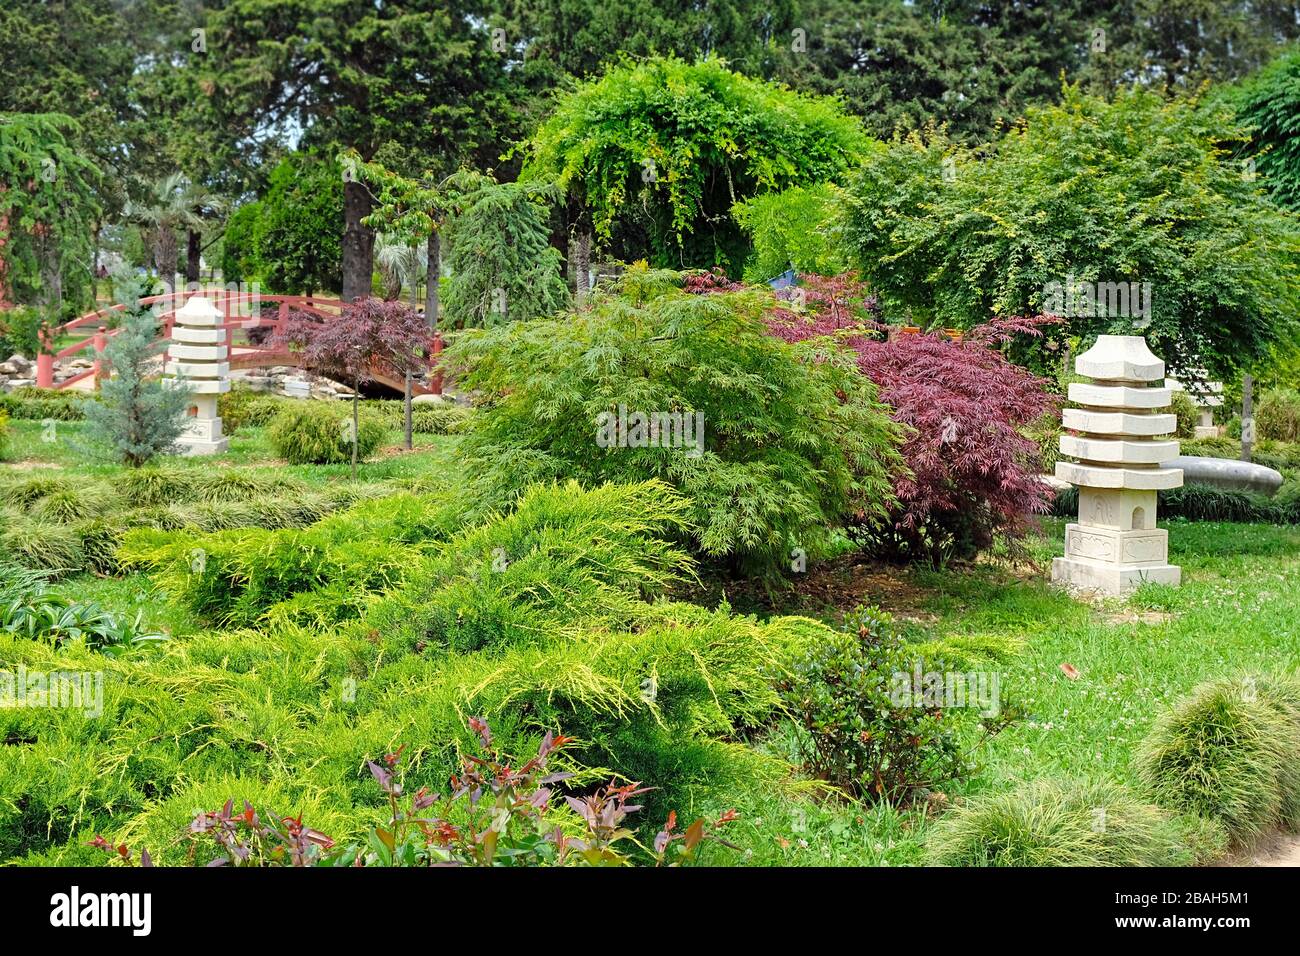 Wunderschöner immergrüner Park in Batumi, Georgia. Schöne Sommerlandschaft im Garten. Landschaftsgestaltung, schöne Gestaltung des Parkbereichs. Stockfoto